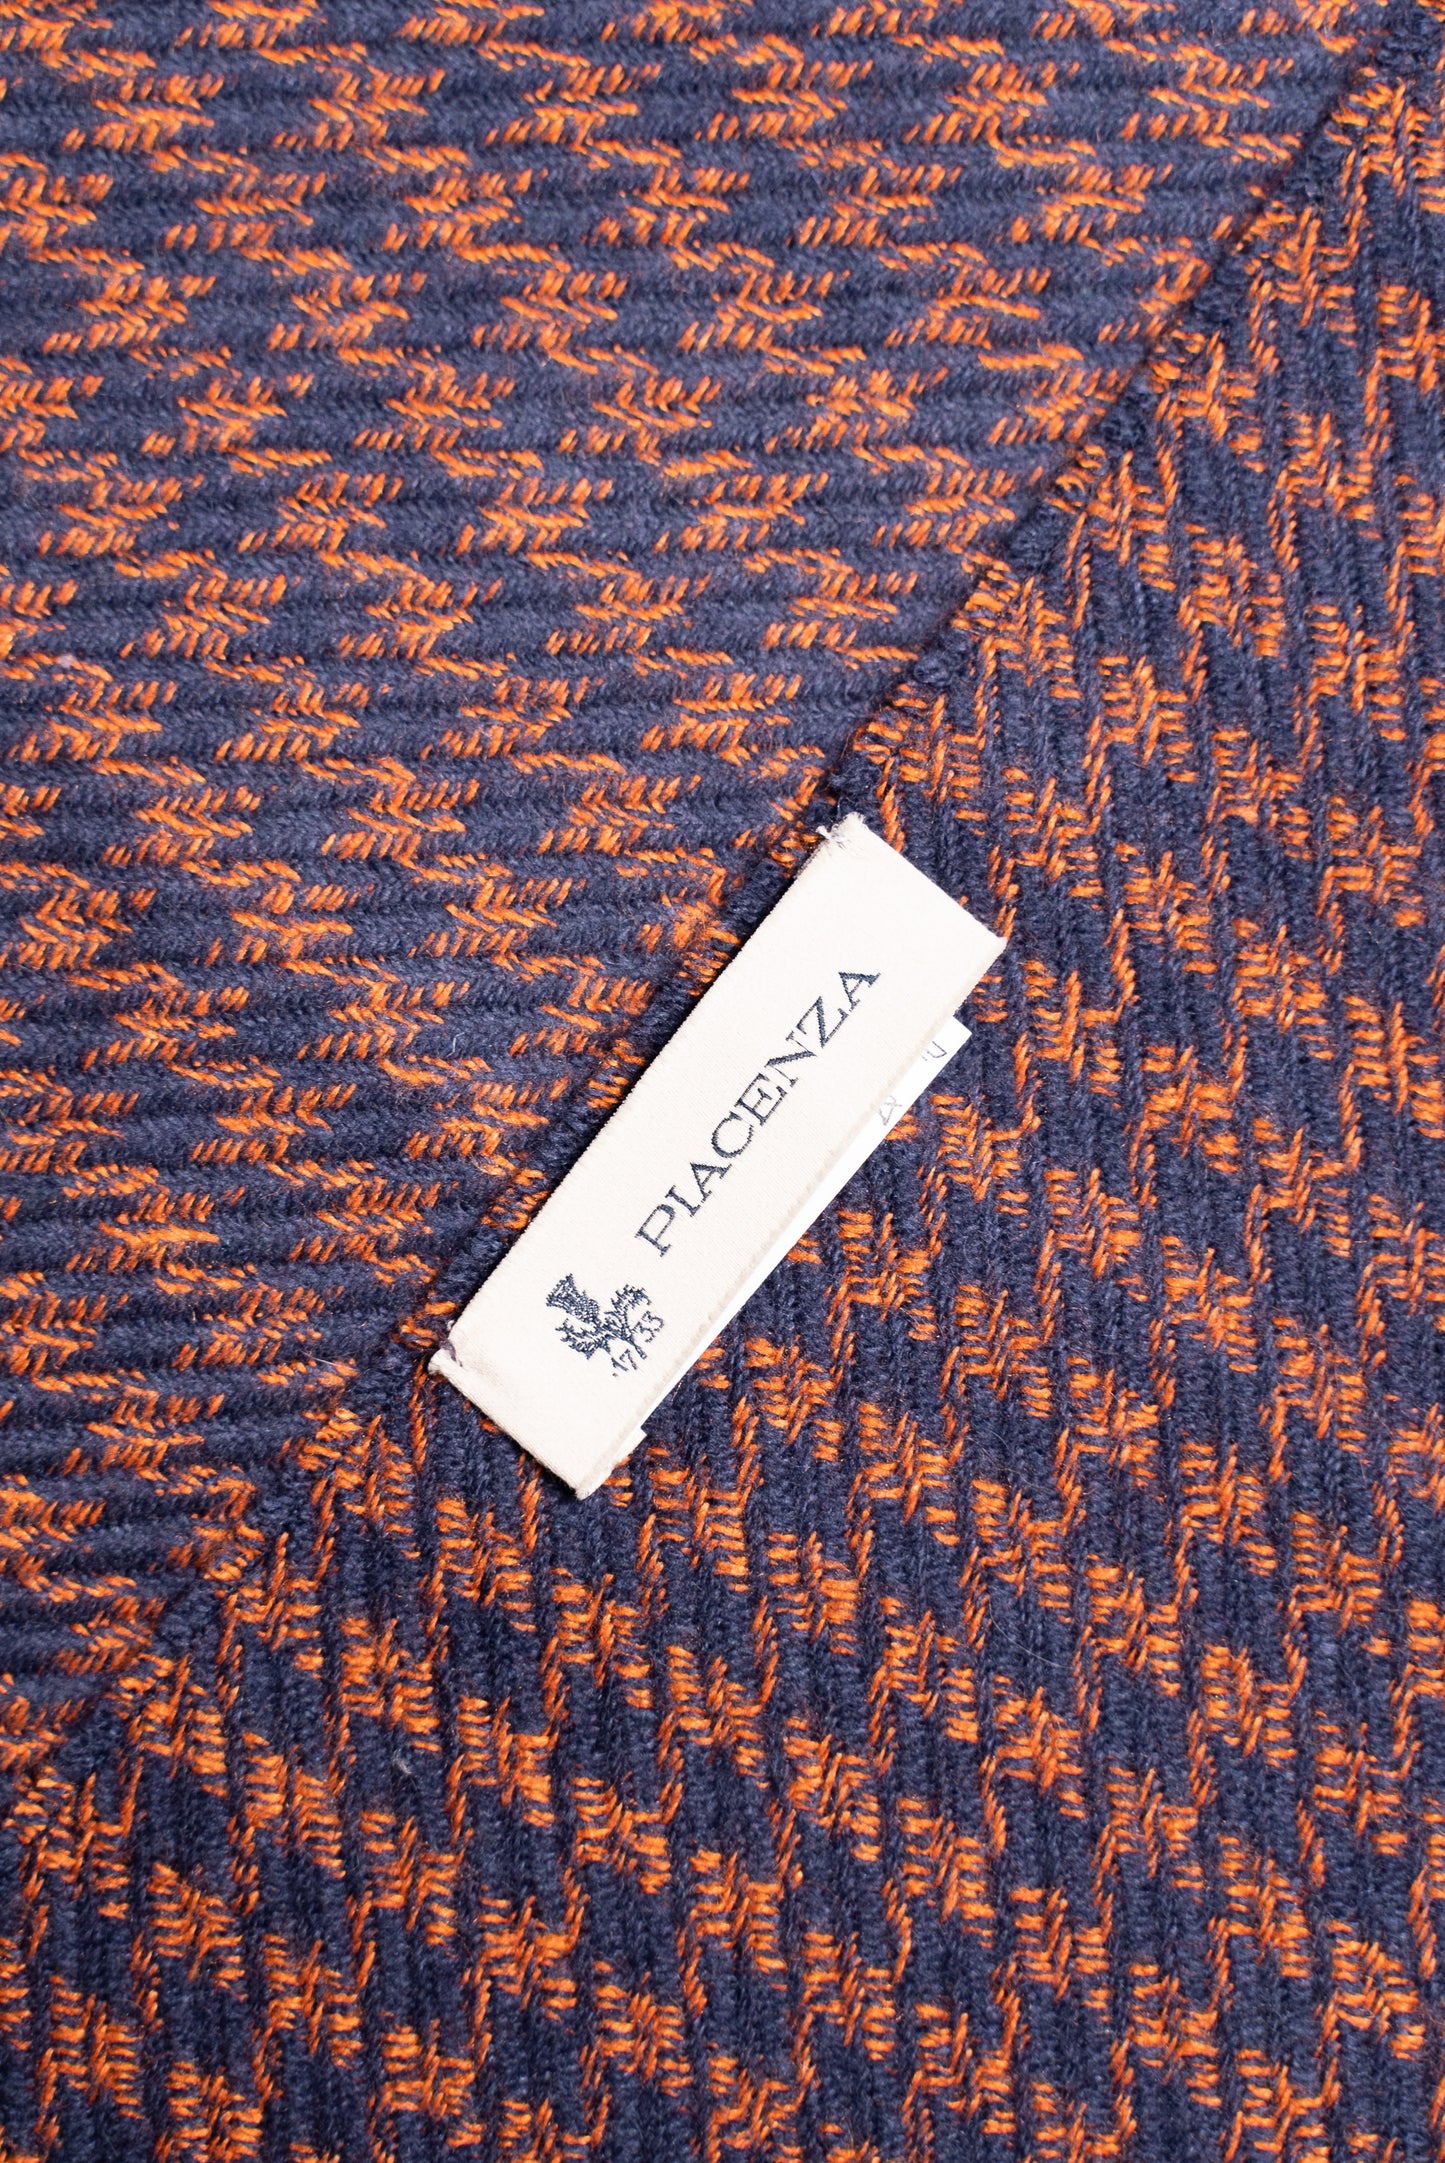 Twist houndstooth orange and blue scarf in Cashmere Silk